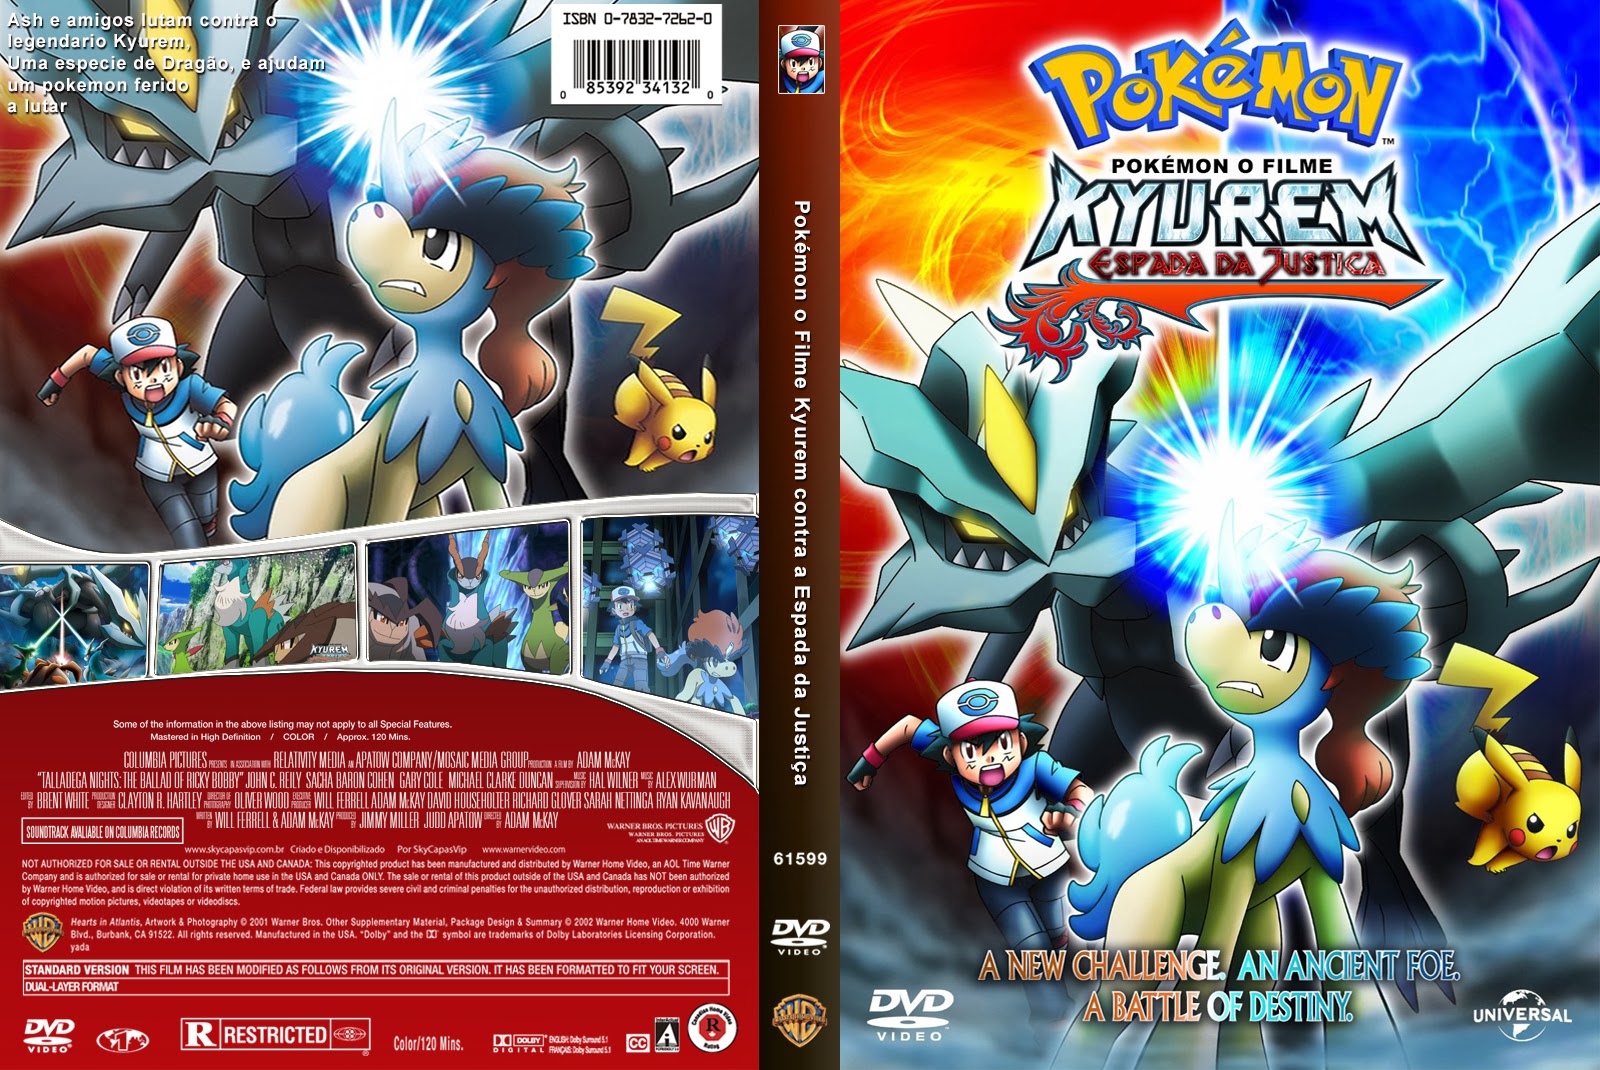 Pokémon, o Filme: Kyurem contra a Espada da Justiça (Dublado